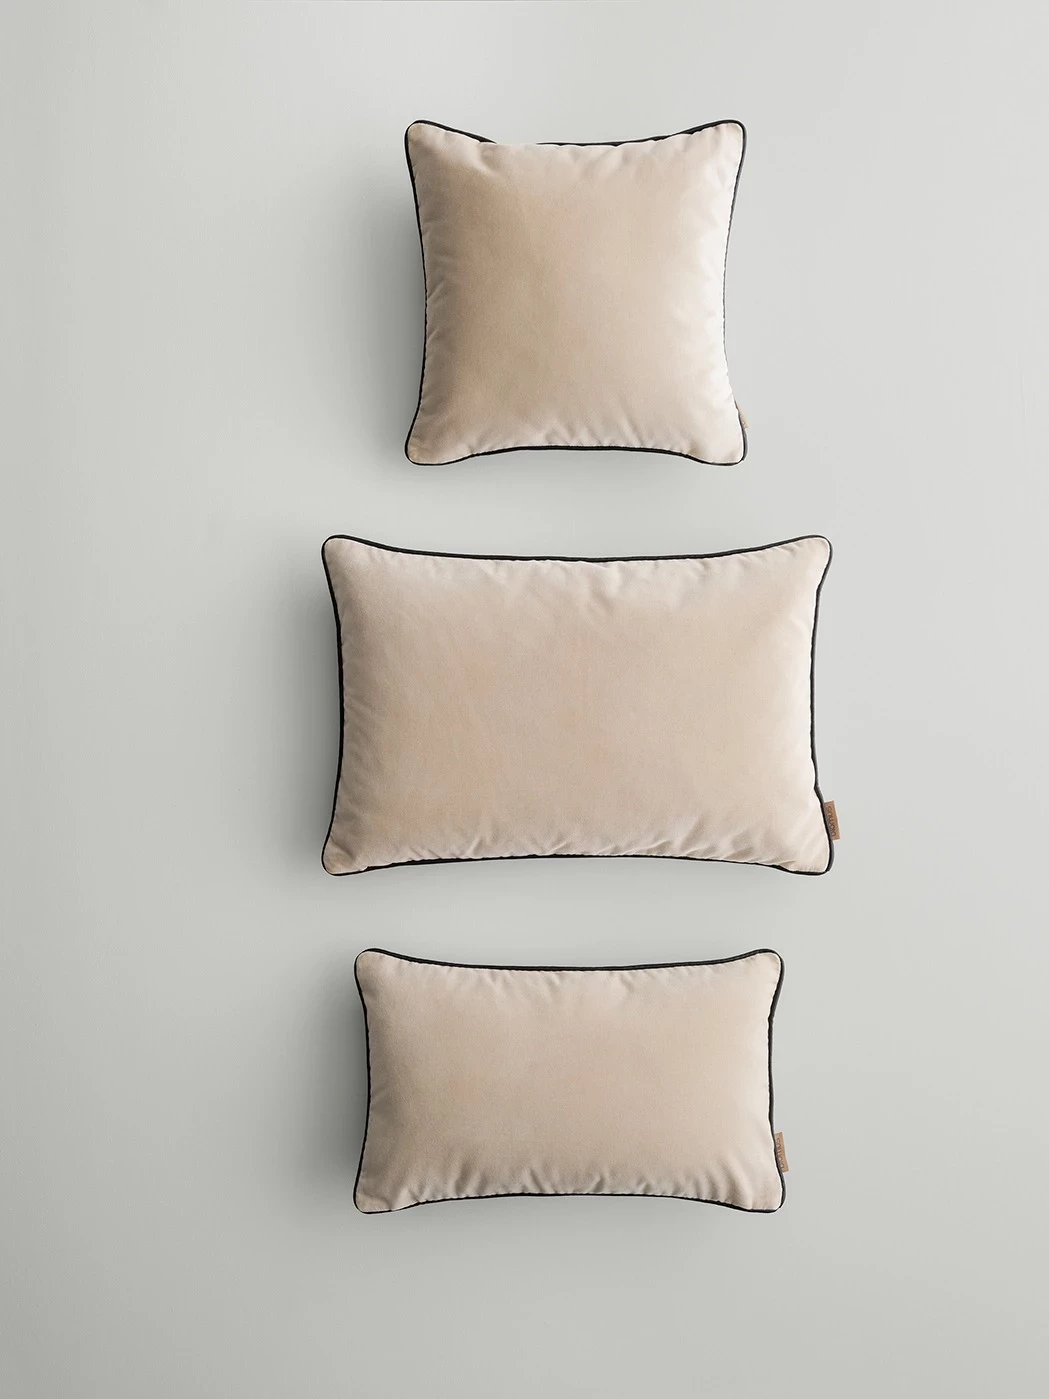 Pillows in three differen sizes